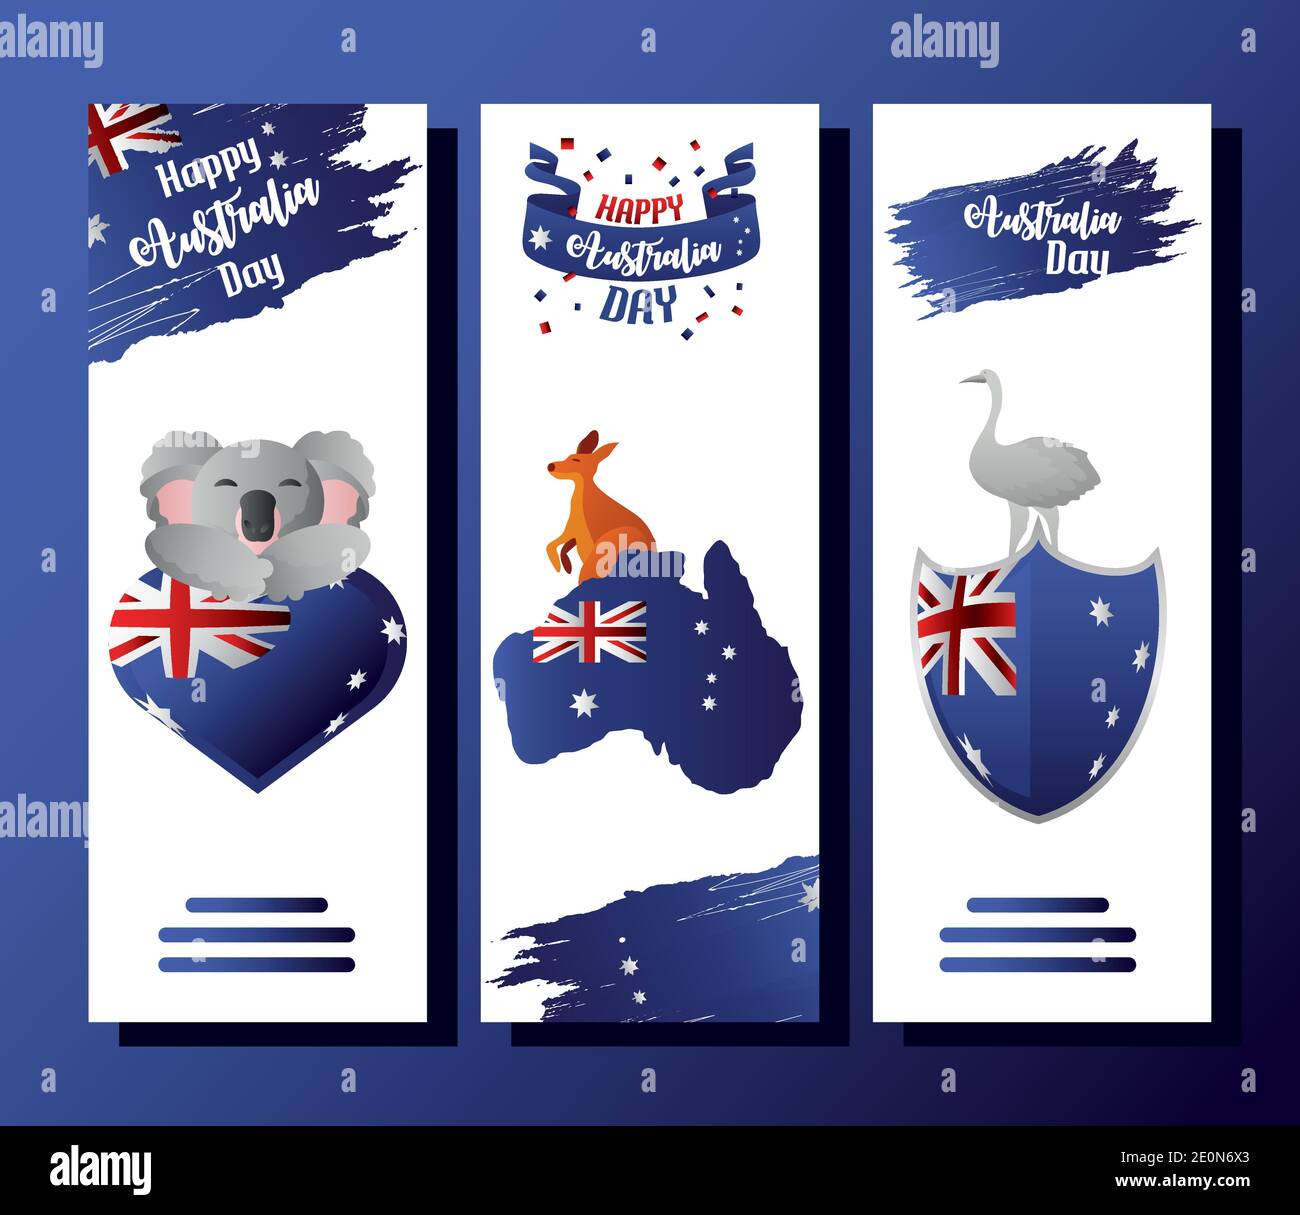 sædvanligt Tegne forsikring mytologi australia day, animals national emblem with flags banner design vector  illustration Stock Vector Image & Art - Alamy